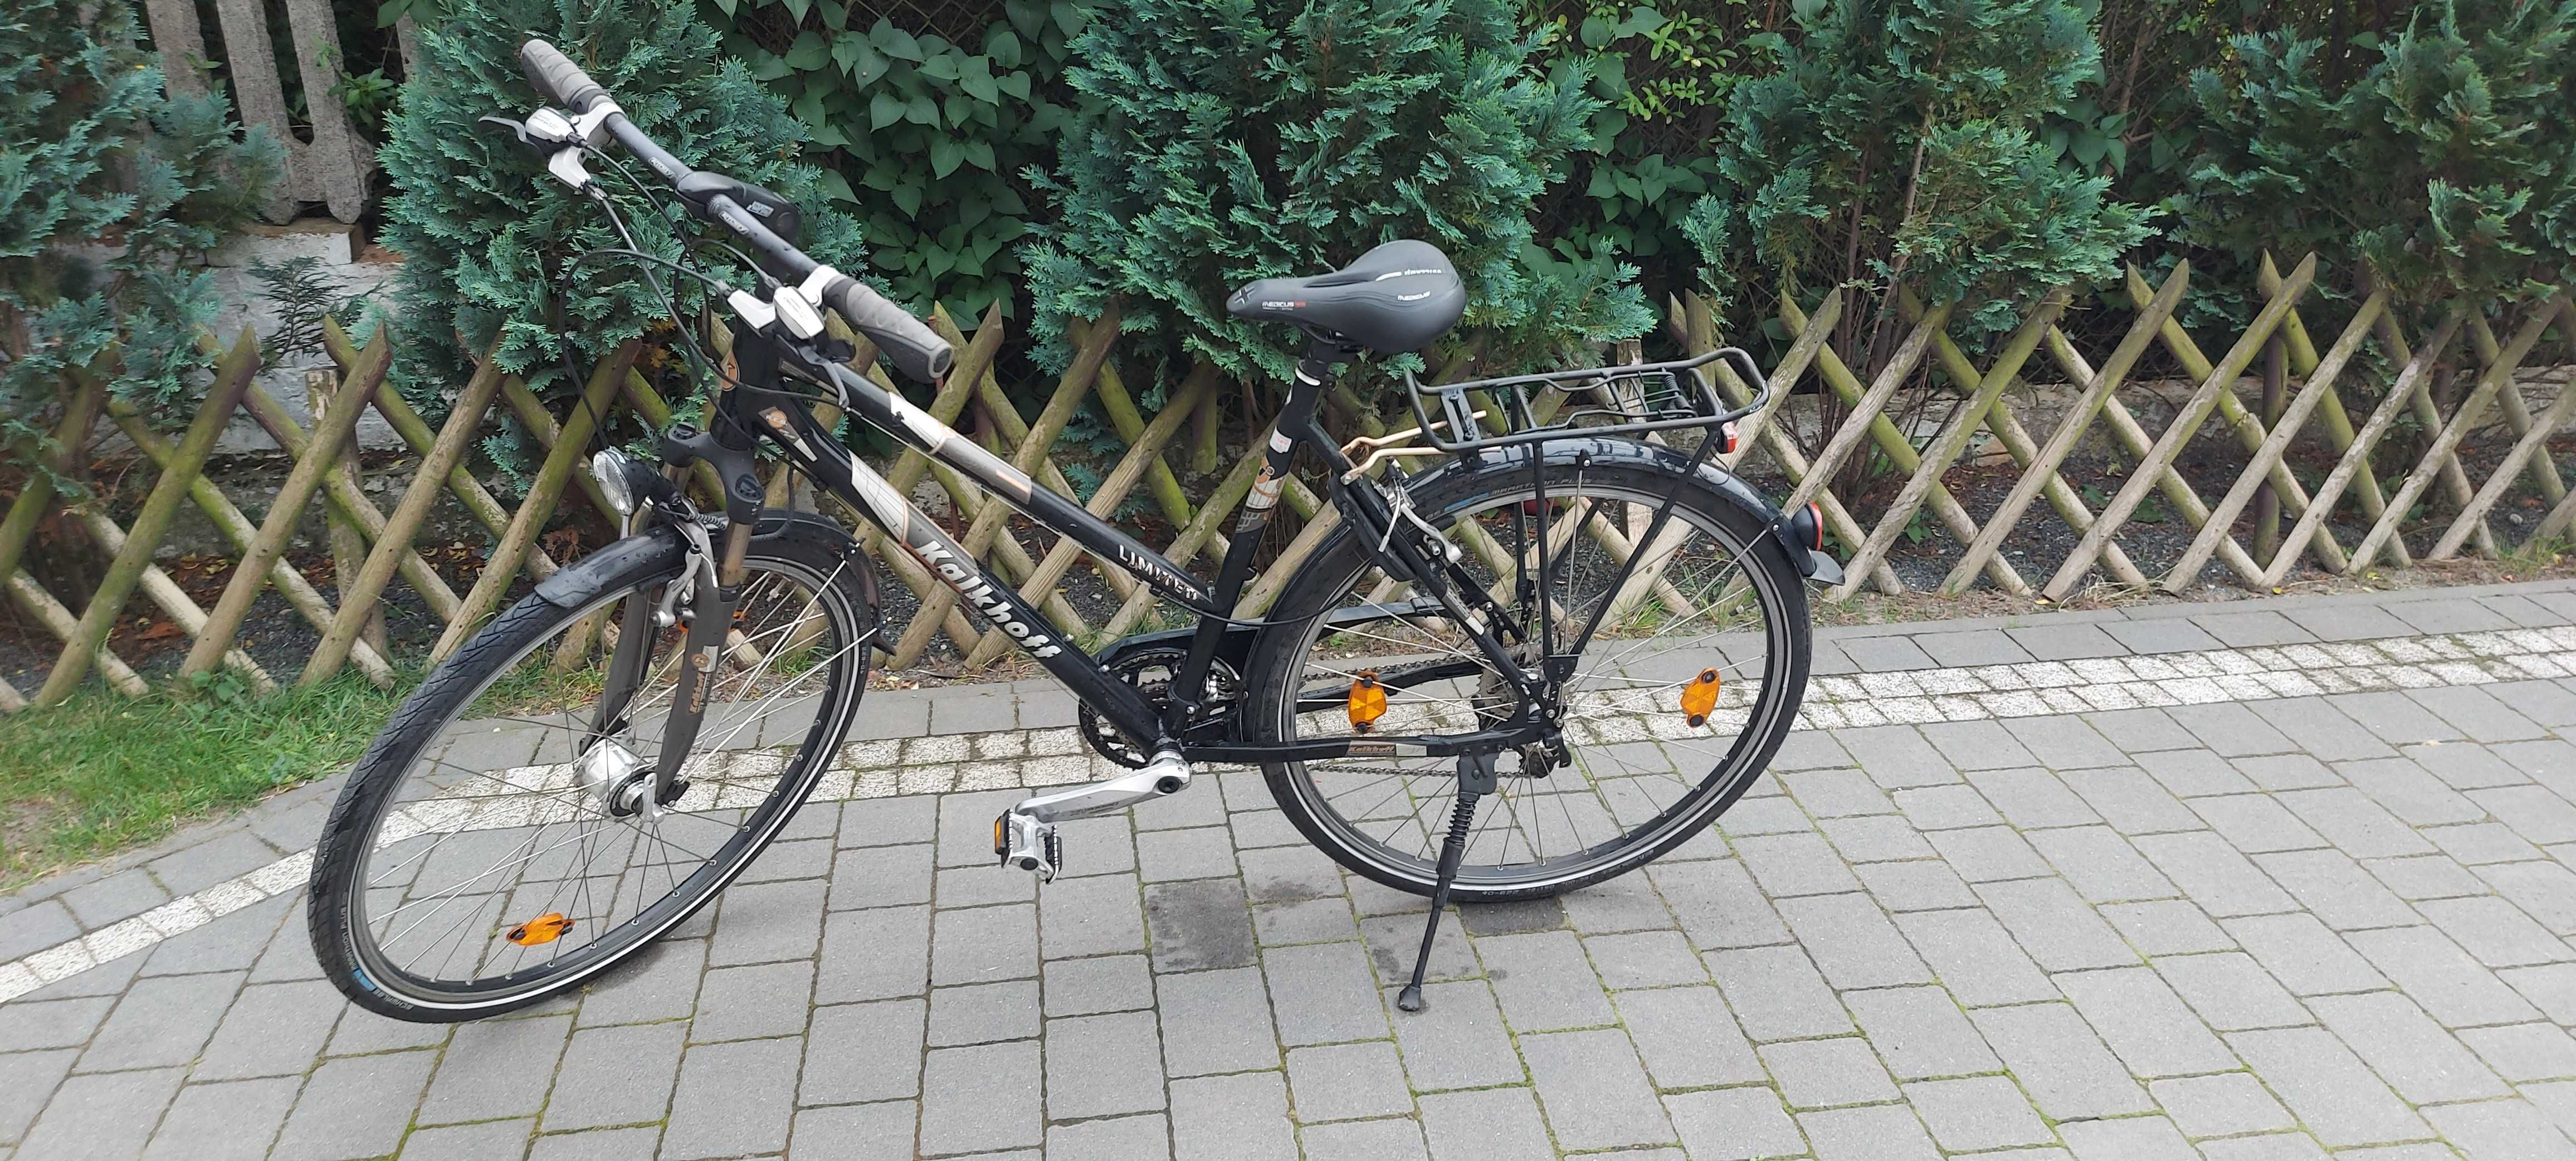 Rower kalkhoff. Niemiecki rower o kołach w roz. 28